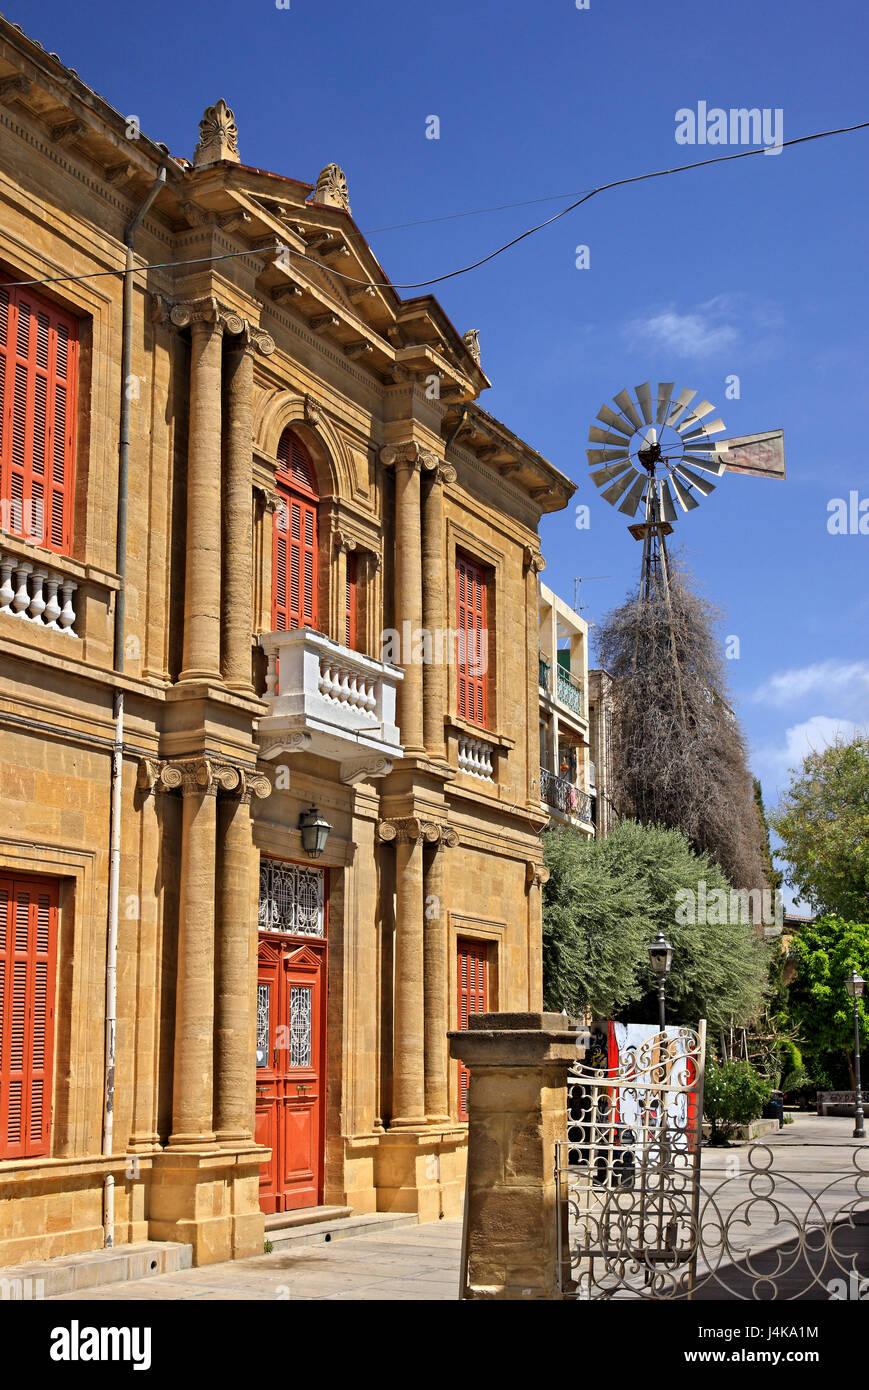 Balade autour de la vieille ville de Nicosie (Lefkosia), la capitale de Chypre, très près de la "ligne verte (aussi connu comme 'zone tampon' ou 'Dead zone'. Banque D'Images